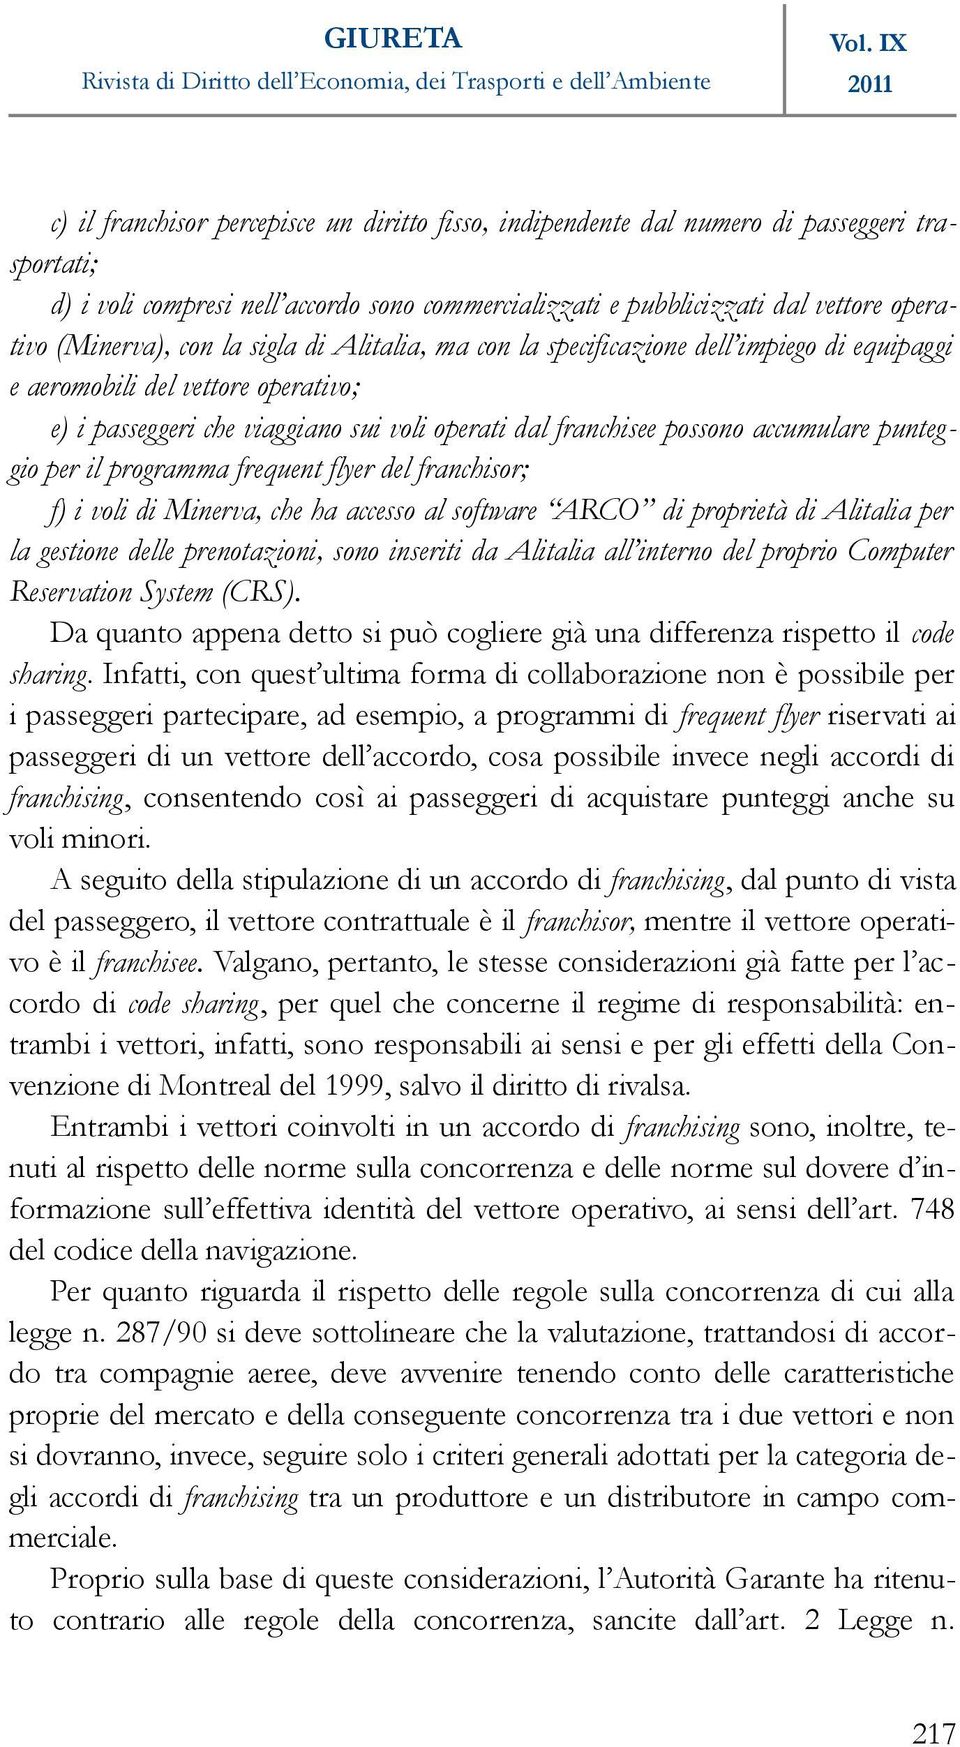 punteggio per il programma frequent flyer del franchisor; f) i voli di Minerva, che ha accesso al software ARCO di proprietà di Alitalia per la gestione delle prenotazioni, sono inseriti da Alitalia